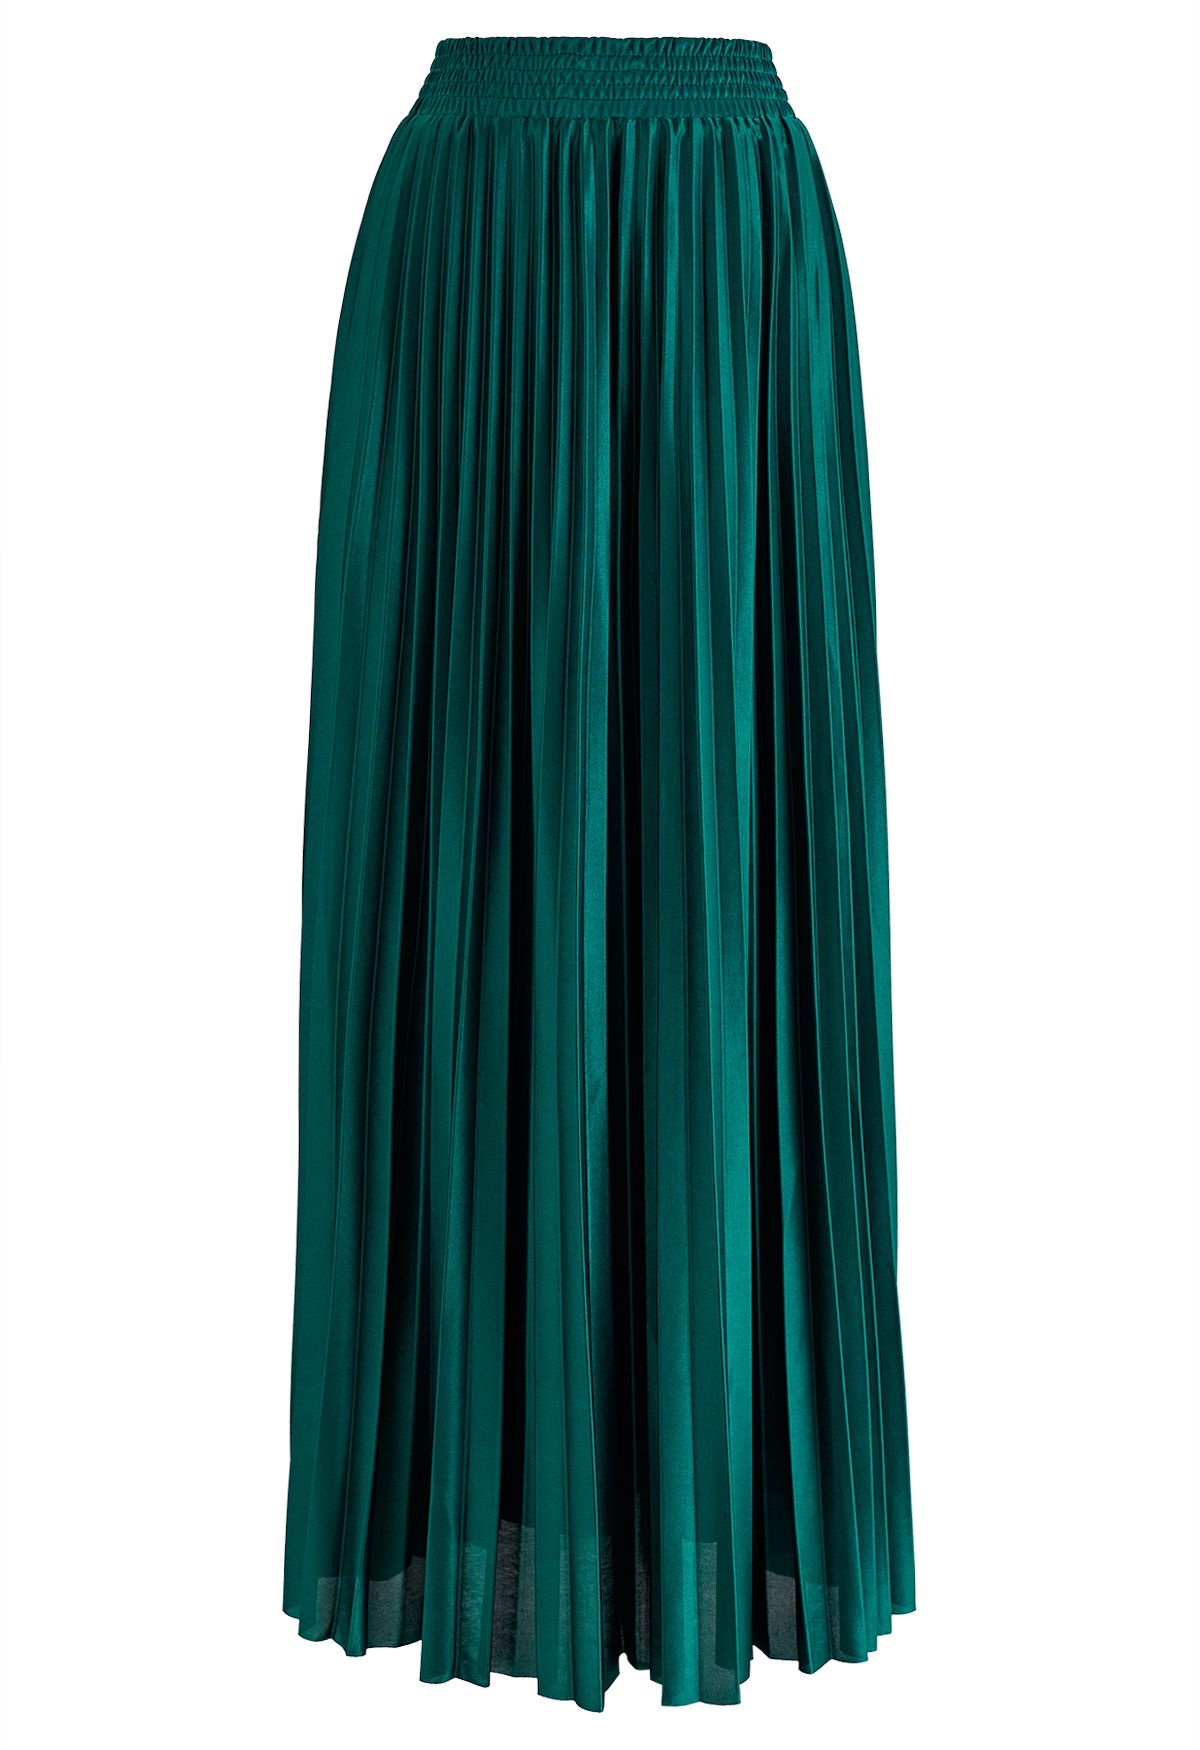 Falda larga plisada brillante en esmeralda